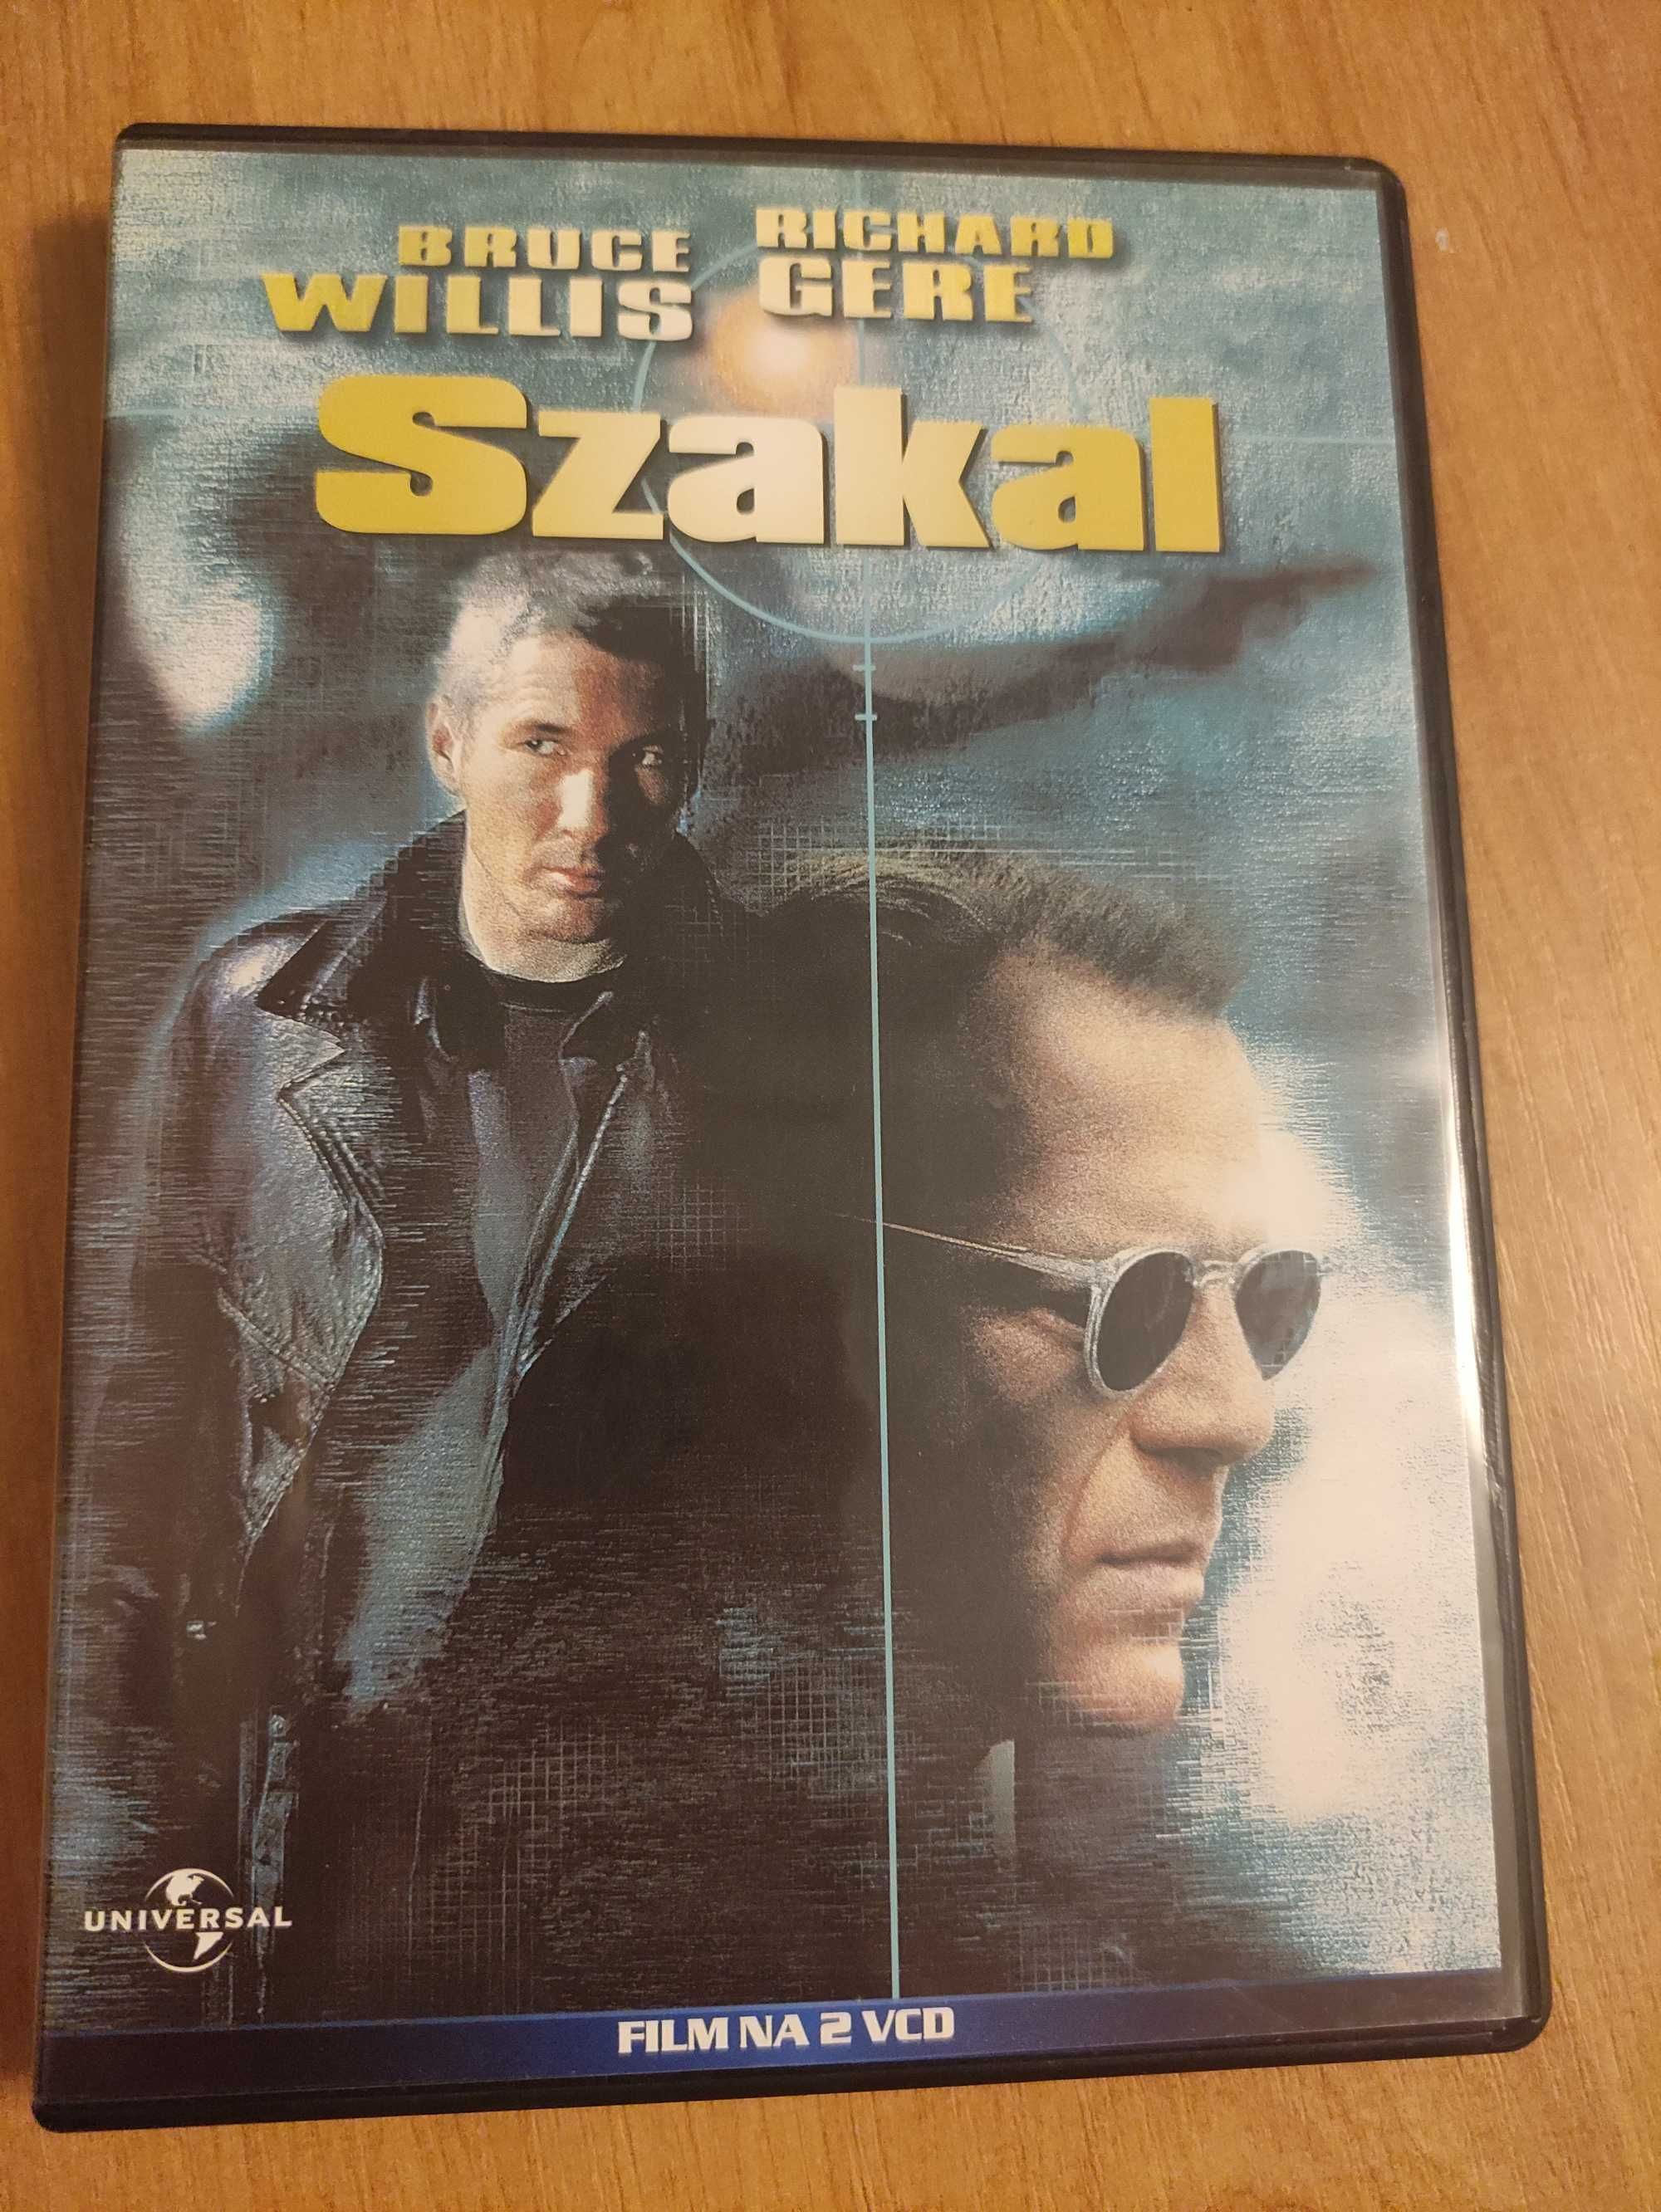 Film DVD,,Szakal "